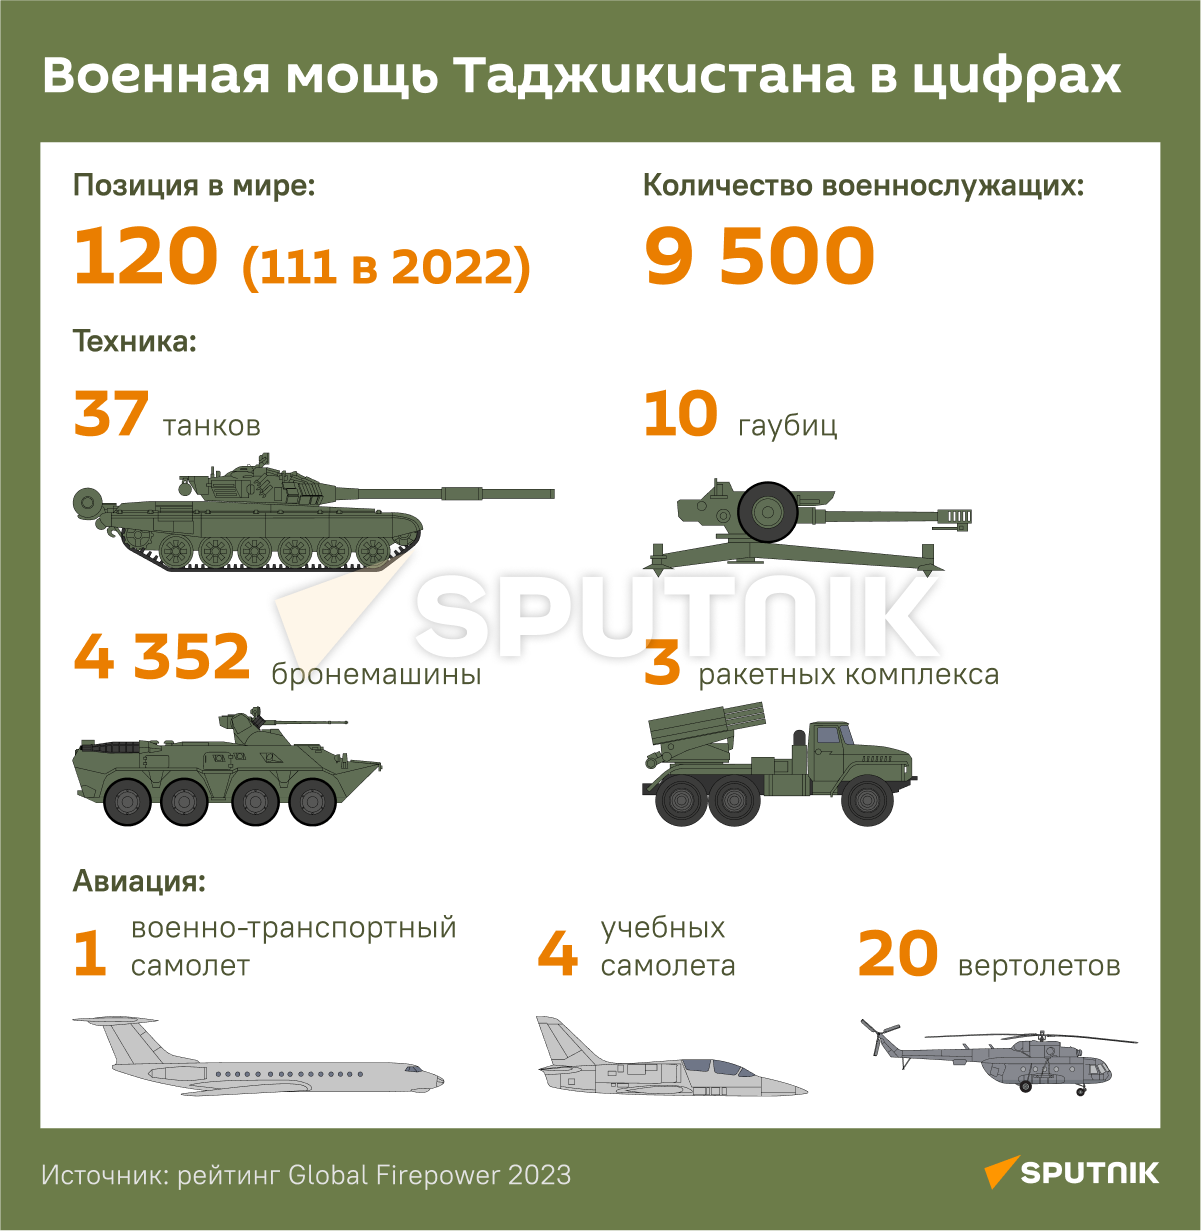 Рейтинги армии 2023. Военная техника Таджикистана 2022. Численность армии Китая. Военная мощь Таджикистана.